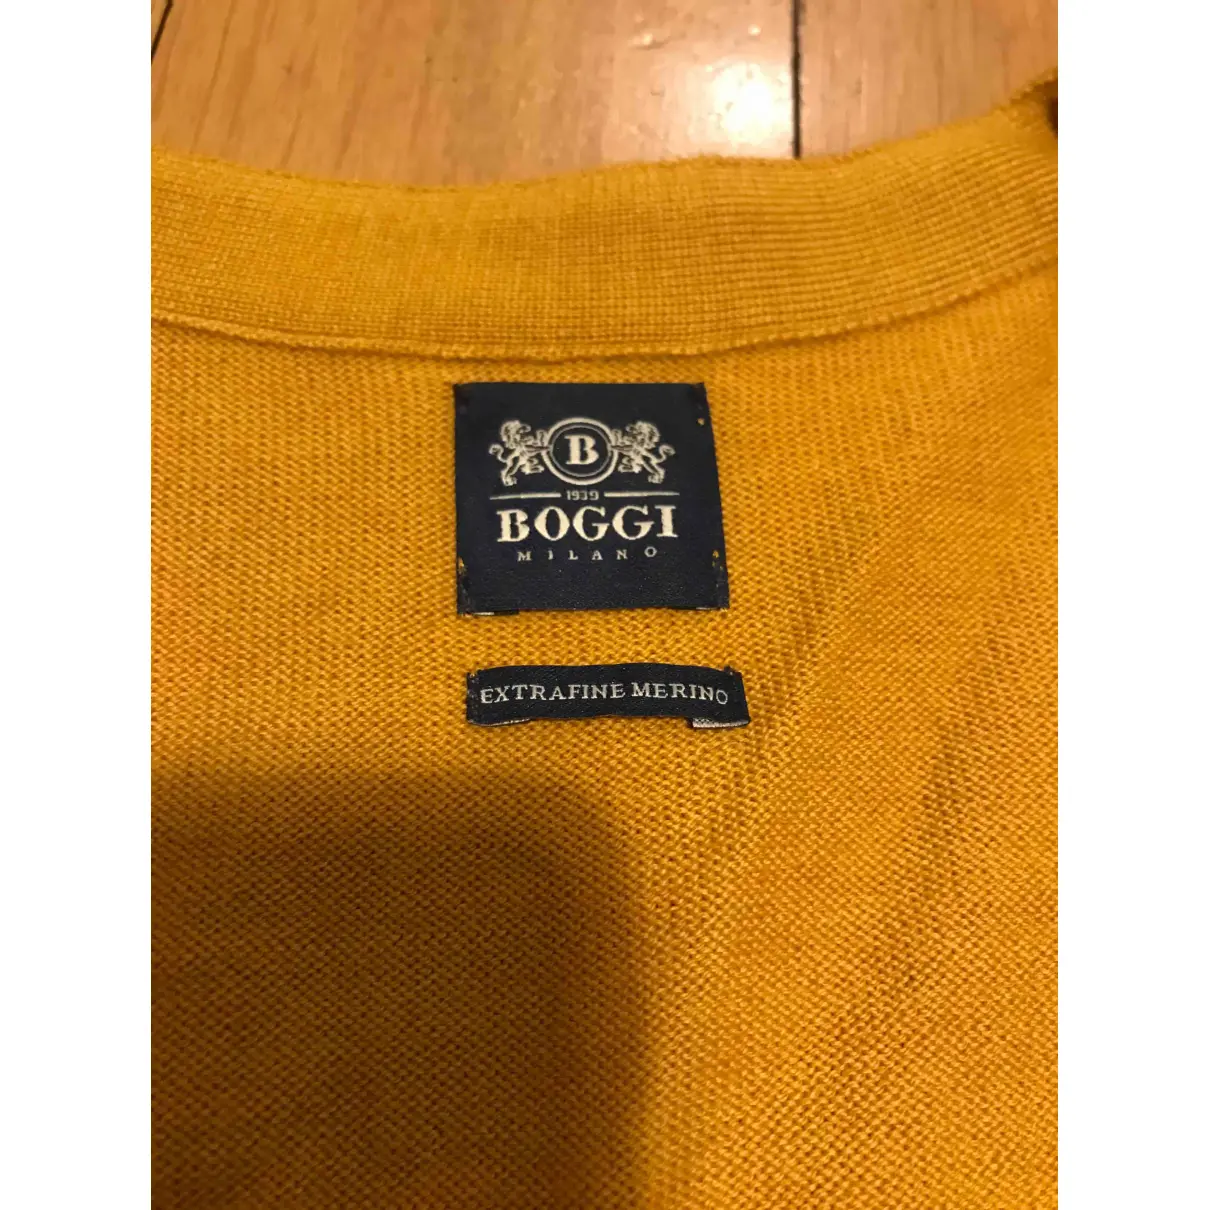 Buy Boggi Wool vest online